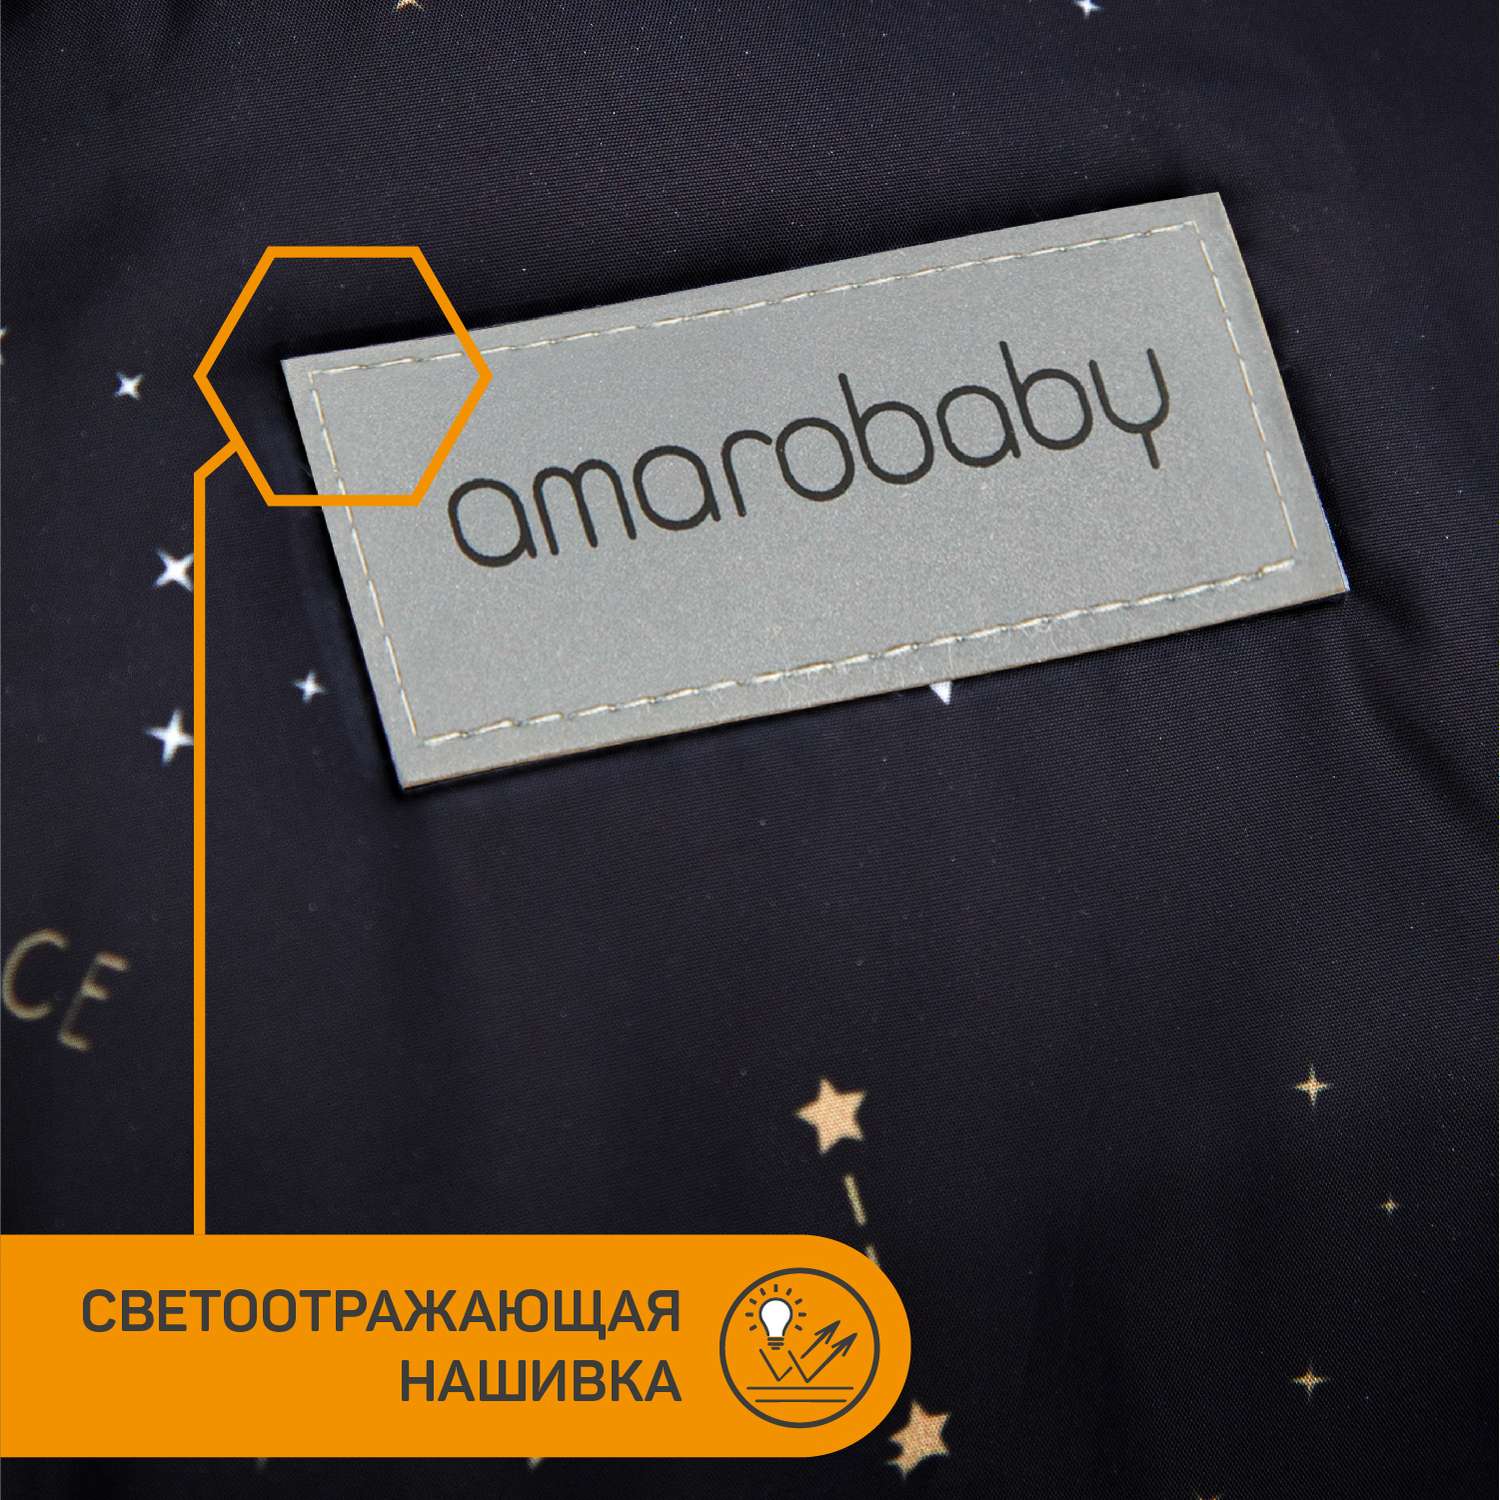 Конверт зимний AmaroBaby меховой Snowy Baby Космос черный 85 см - фото 11